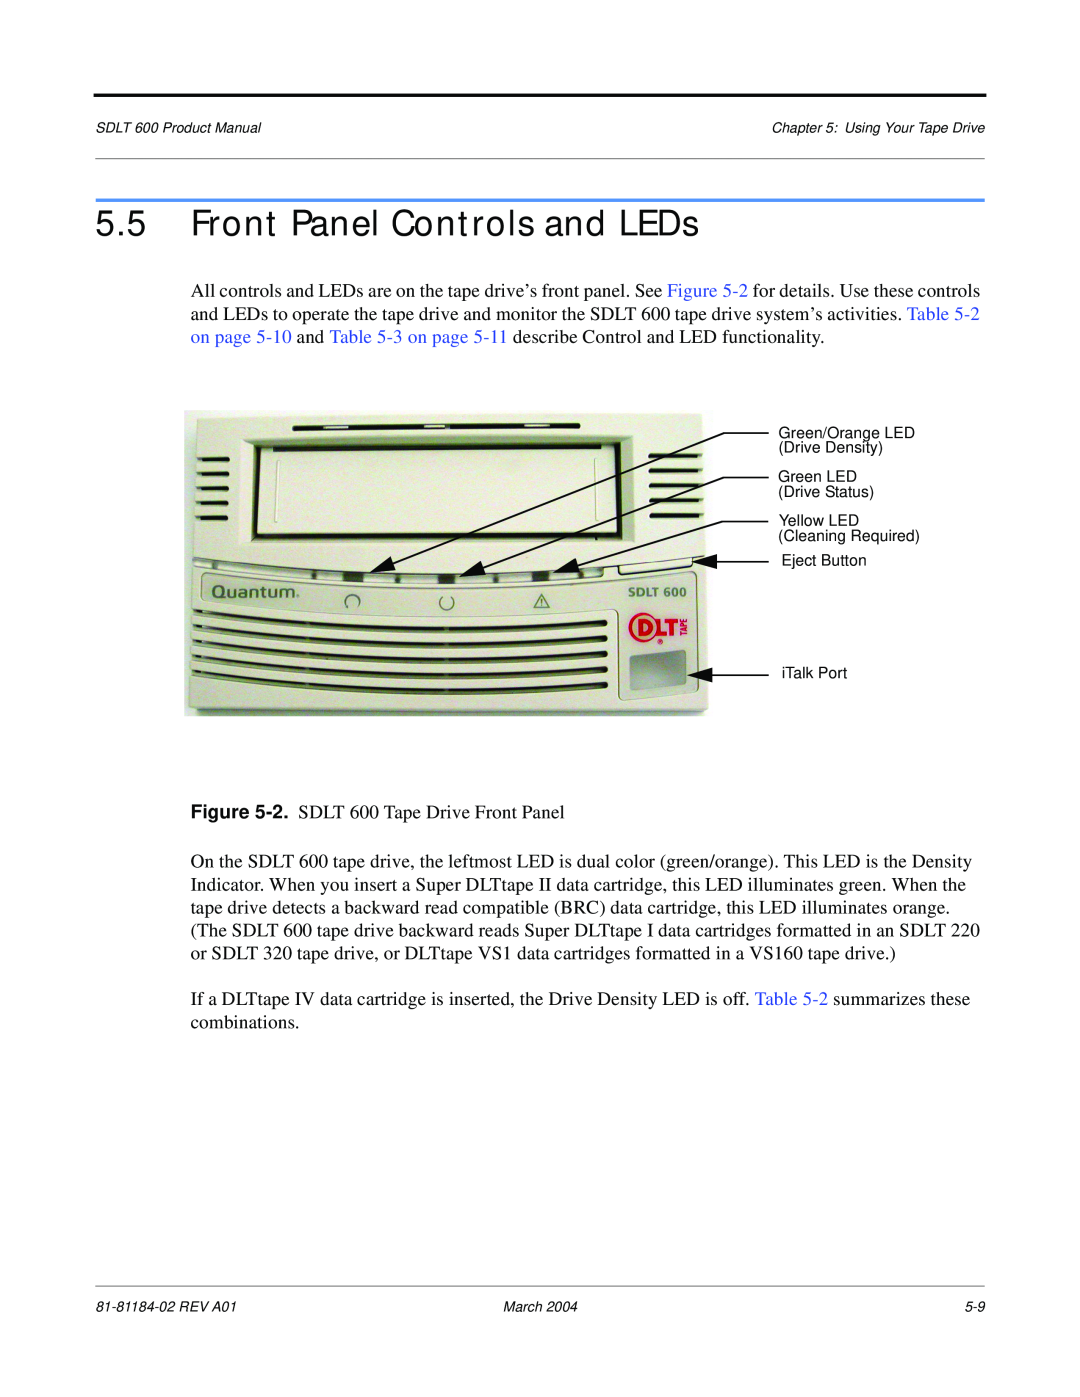 Tandberg Data 600 manual Front Panel Controls and LEDs 